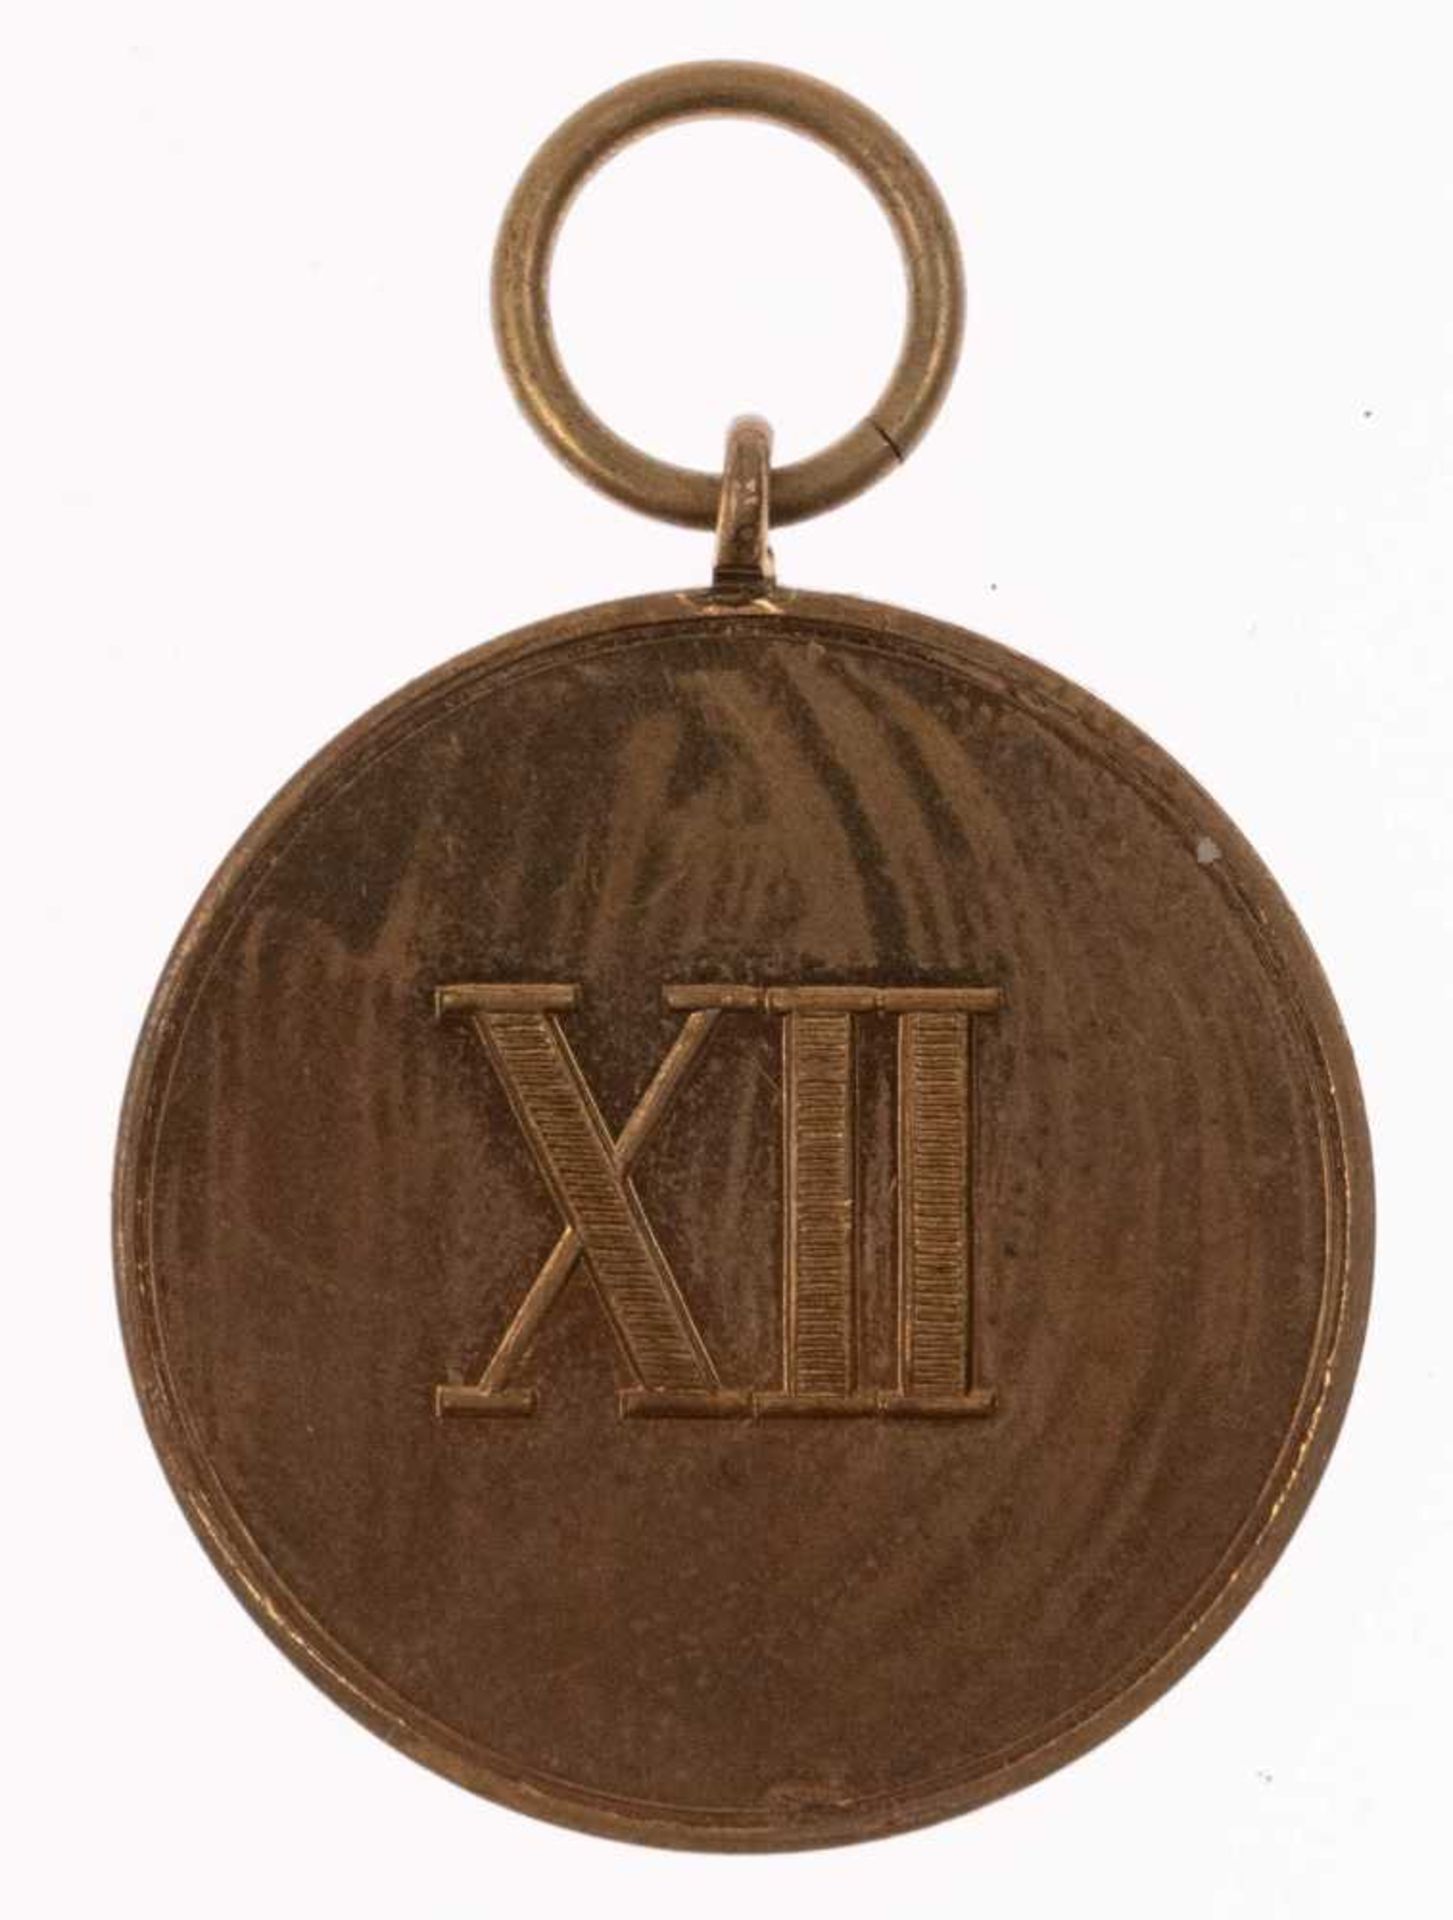 Sachsen, Dienstauszeichnung 2. Klasse für 12 Dienstjahre 1913, Kupfer bronziert, OEK 2314, Zustand 2 - Bild 2 aus 2